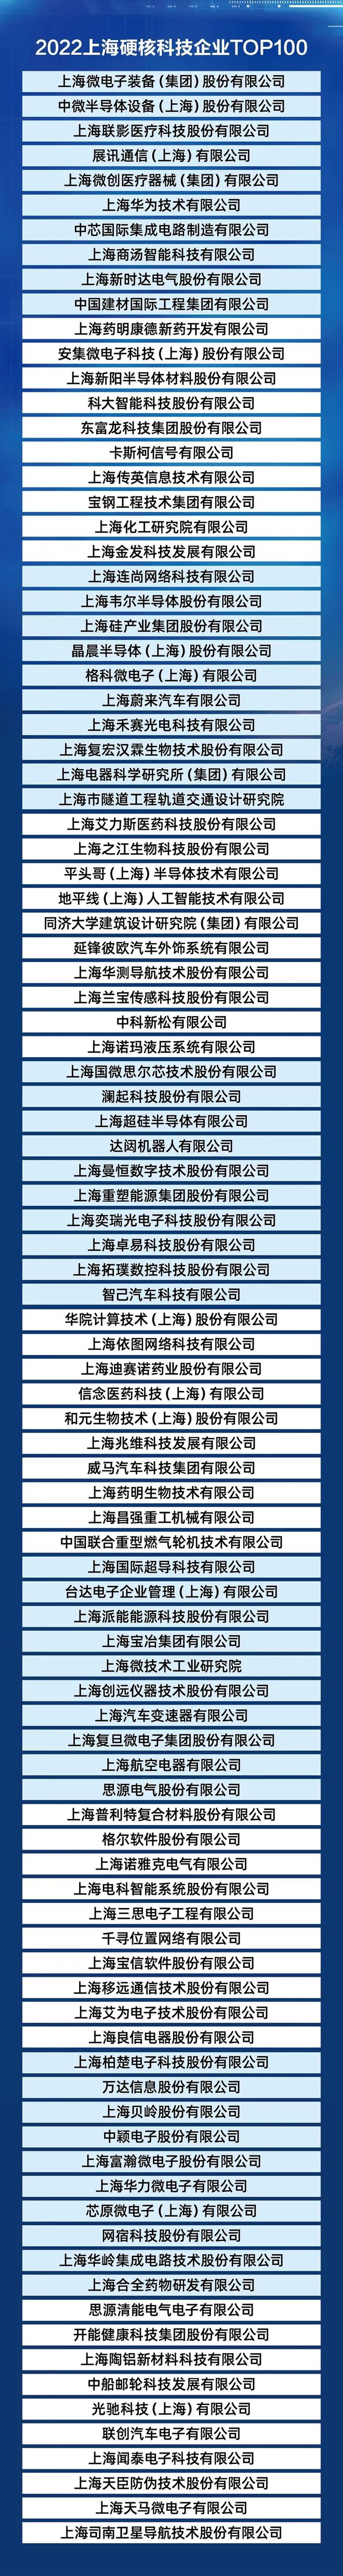 2022上海硬核科技企业TOP100榜单发布